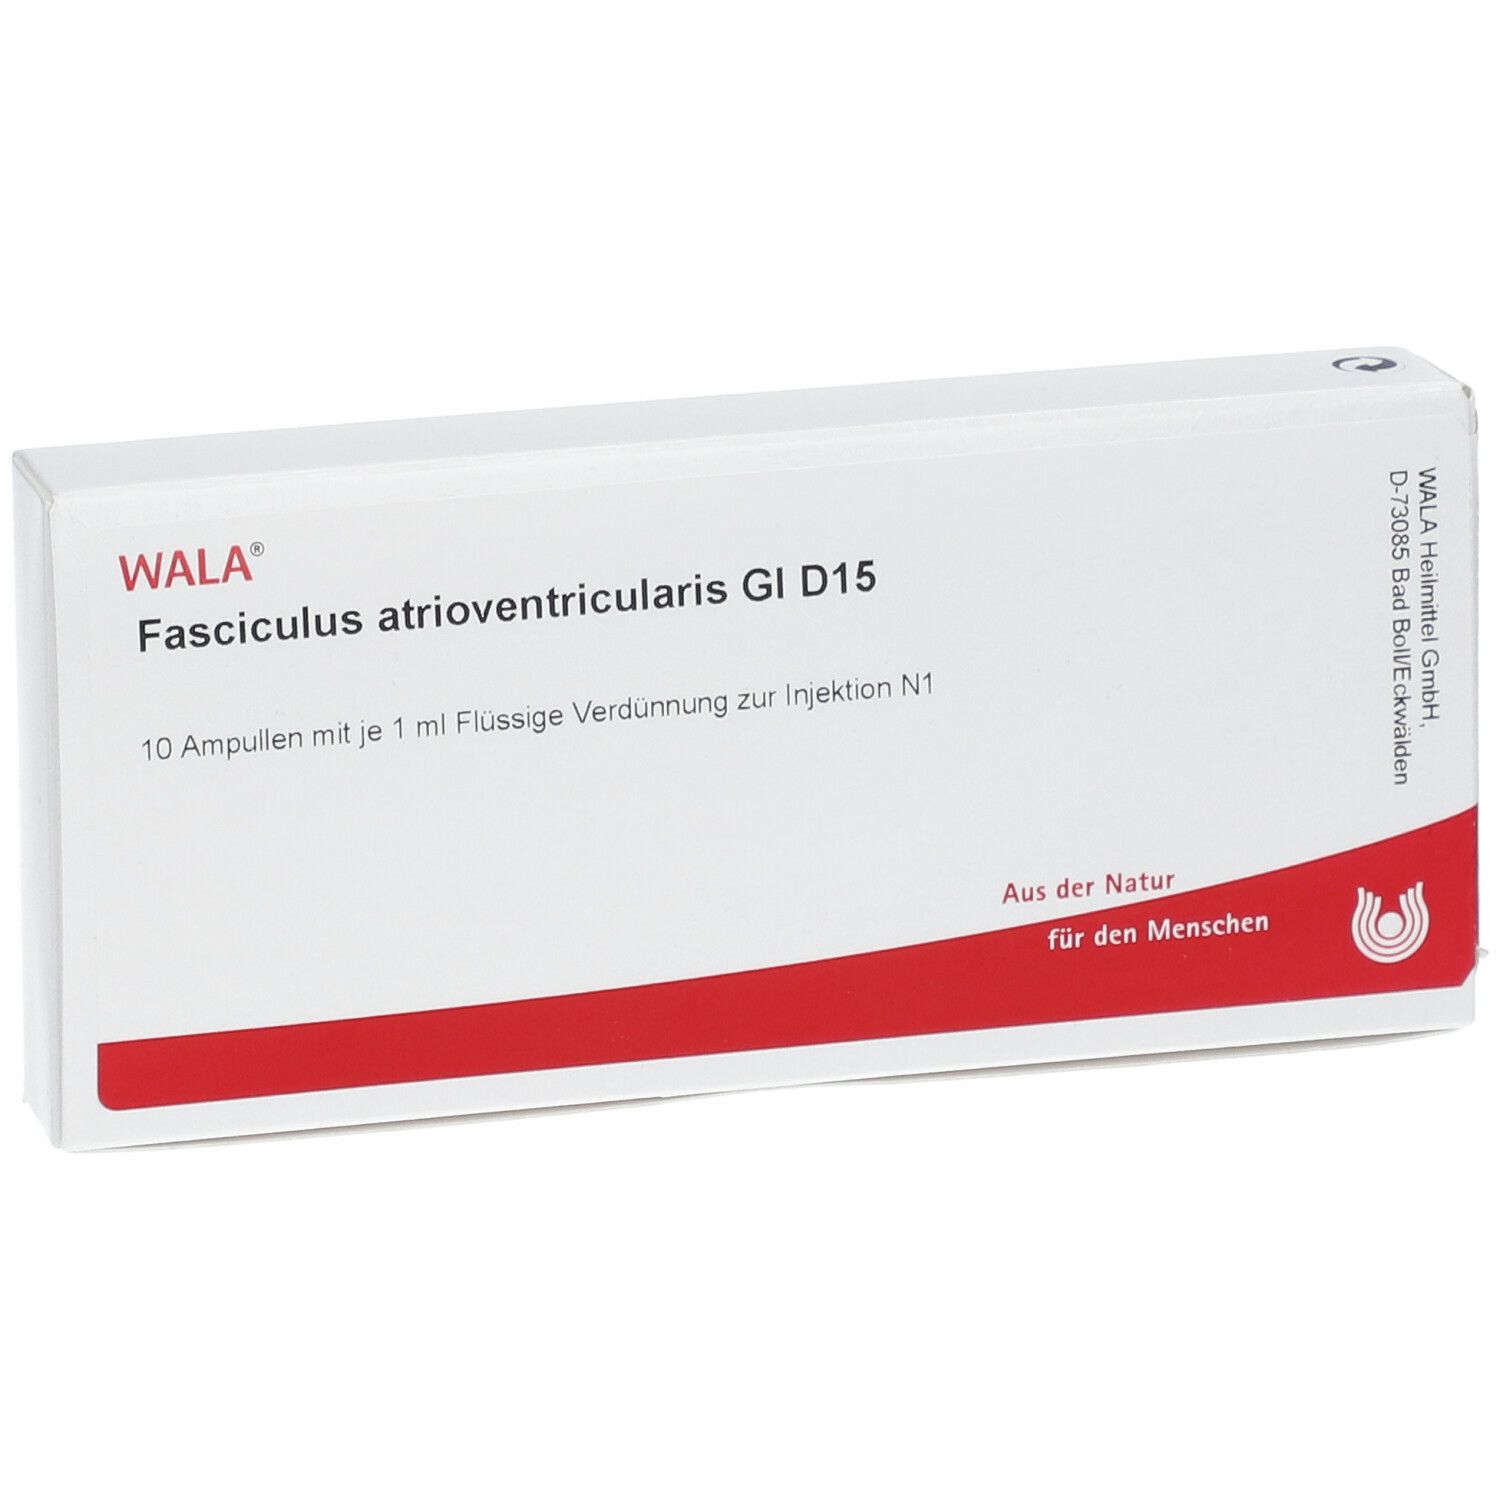 WALA® Fasciculus atrioventricularis Gl D 15